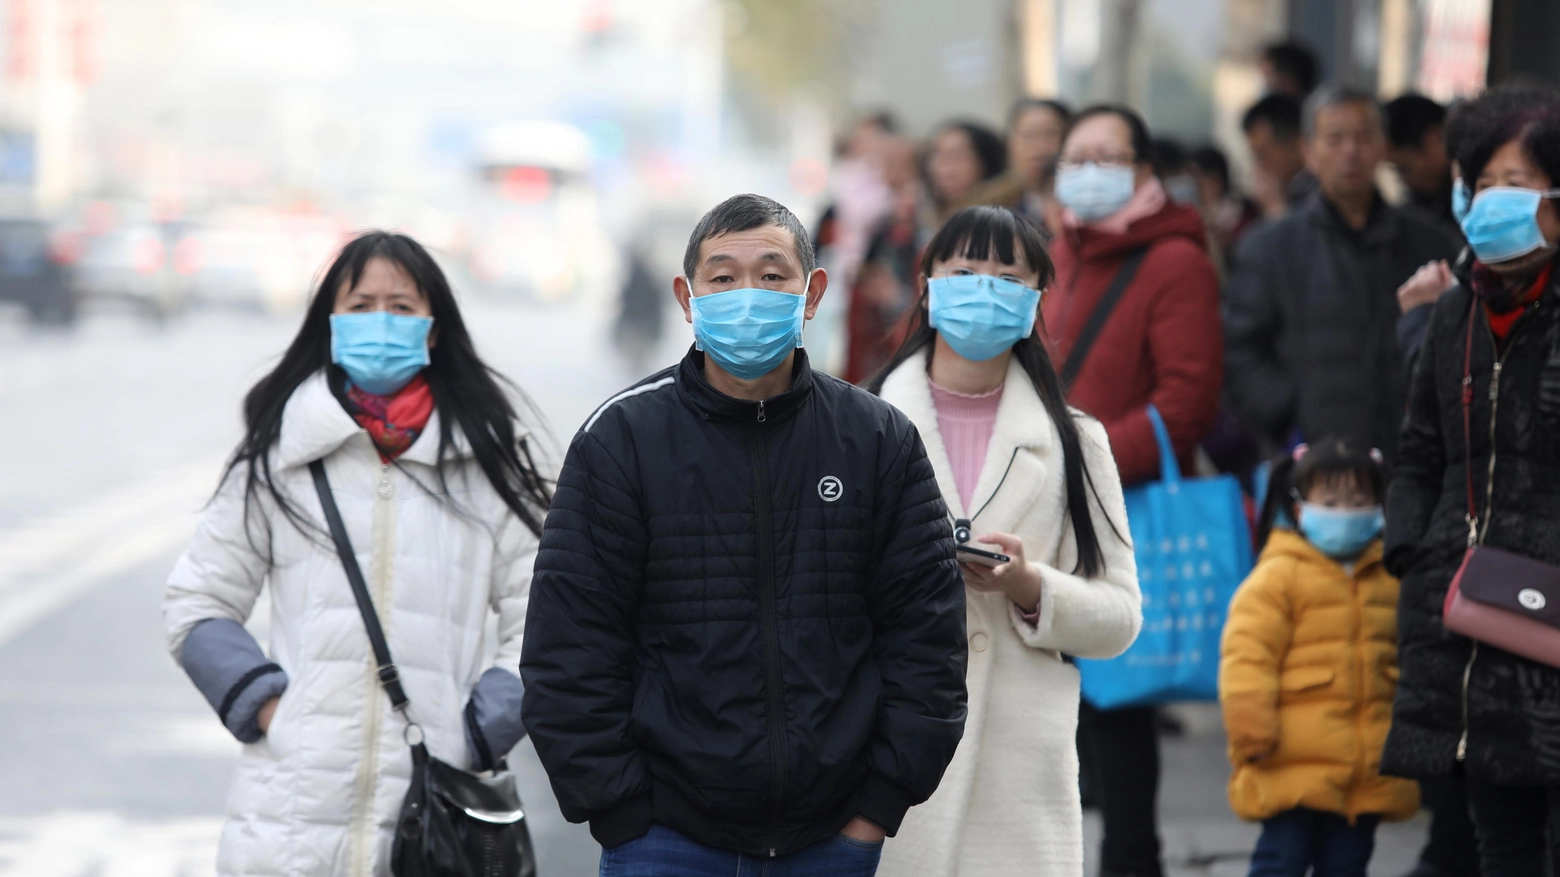 Cinesi con mascherine a Wuhan, dove si sono registrati i primi casi del virus (Ansa)